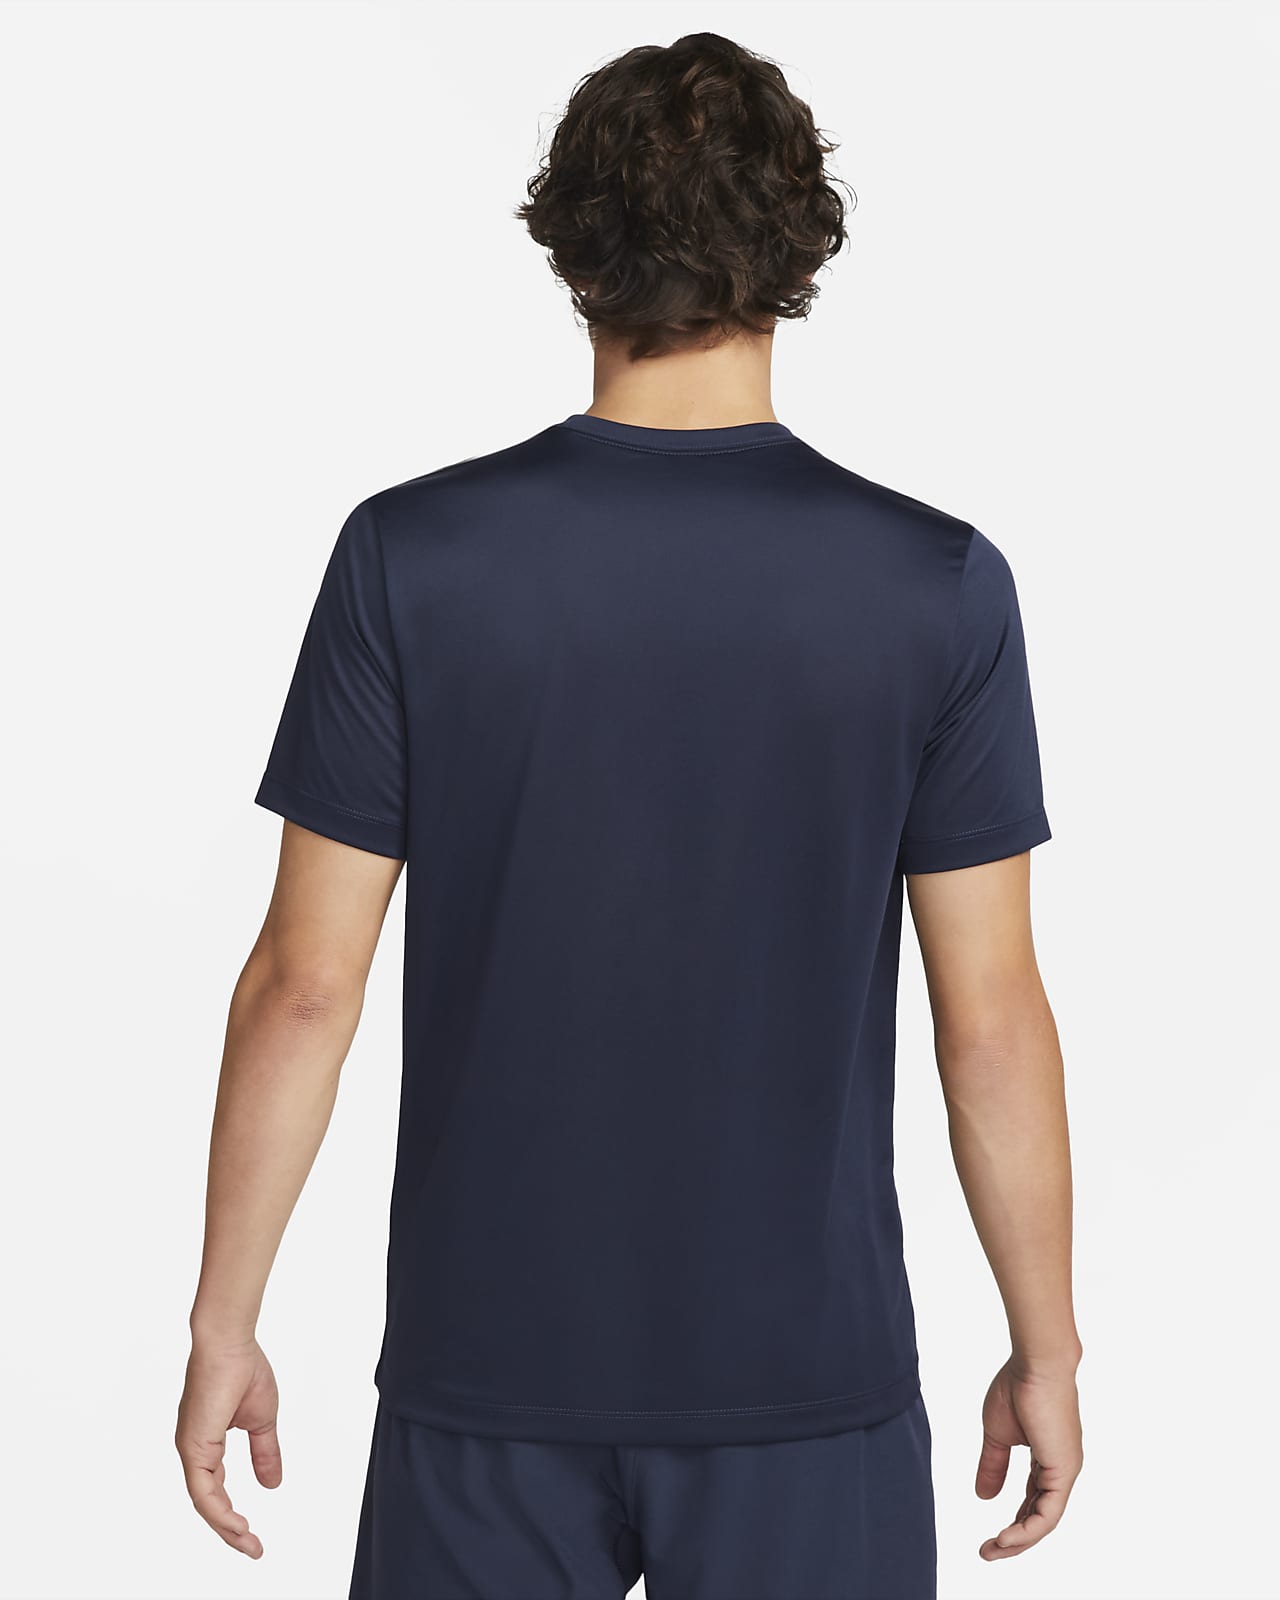 ナイキ Tシャツ 半袖 メンズ DF RLGD リセット S/S Tシャツ DX0990-451 Nike OD